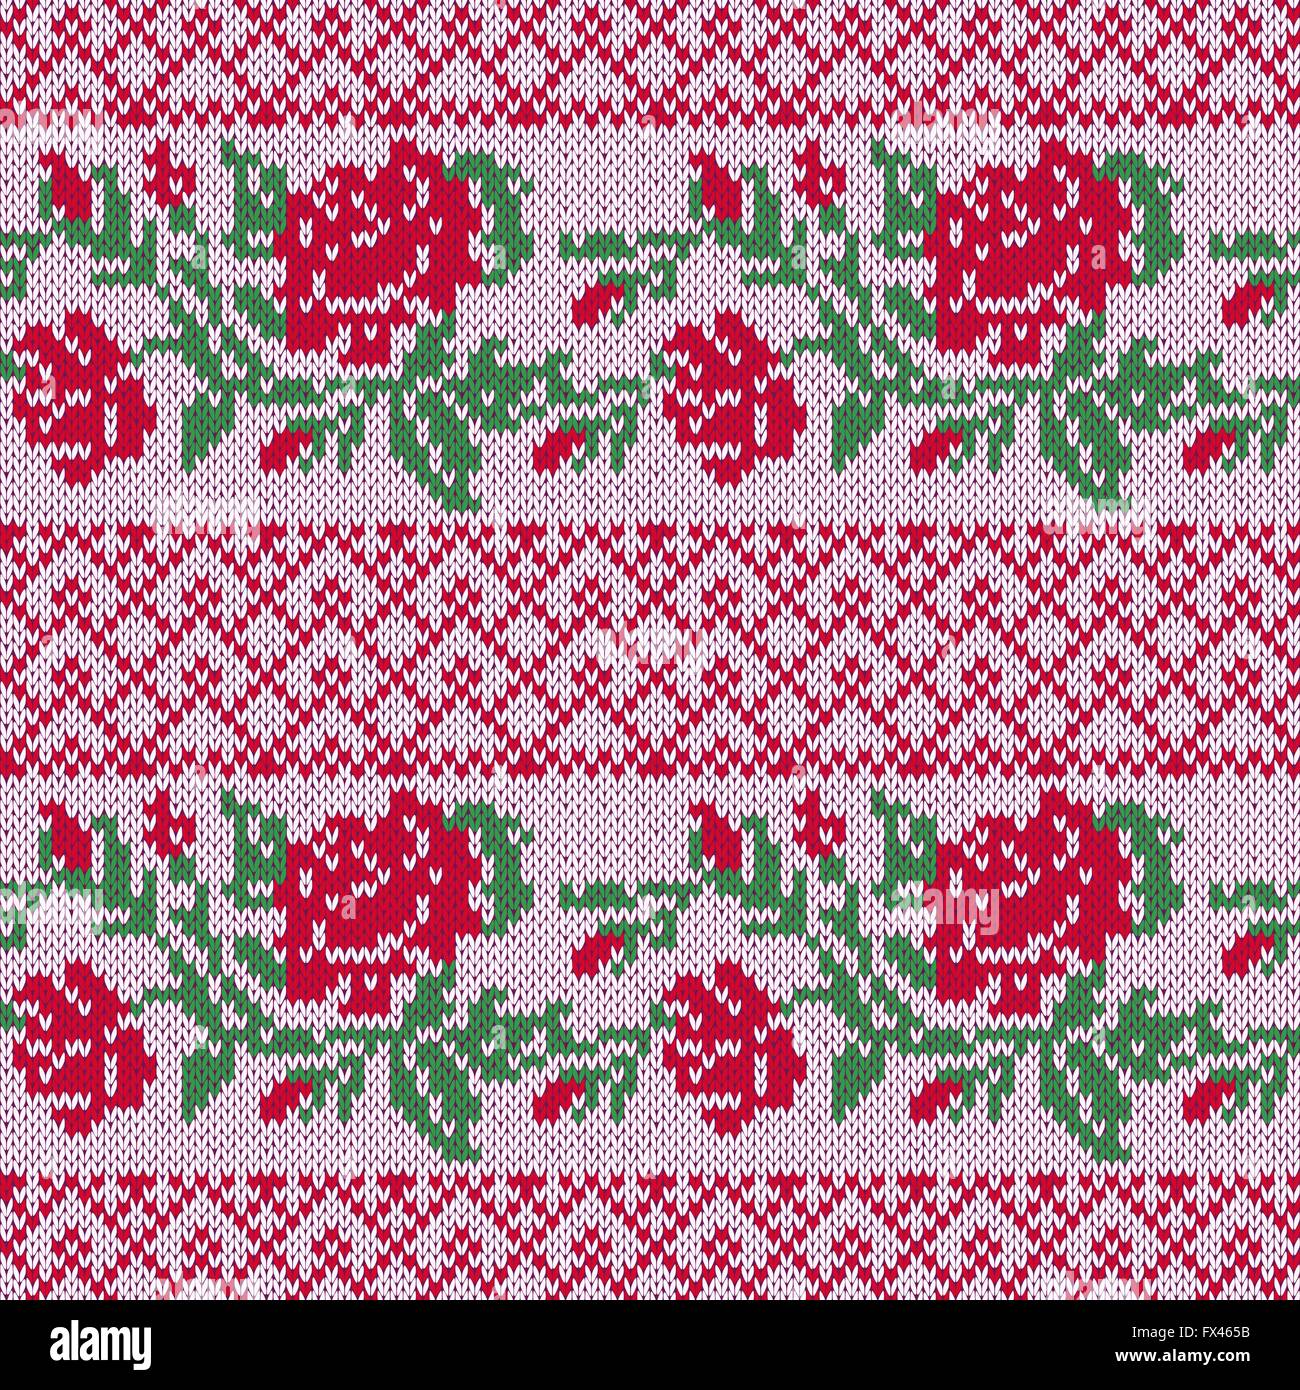 Dekorative nahtlose Vektor Strickmuster als Stoff Textur mit Reihen von  stilvolle rote Rosen und grünen Blättern Stock-Vektorgrafik - Alamy